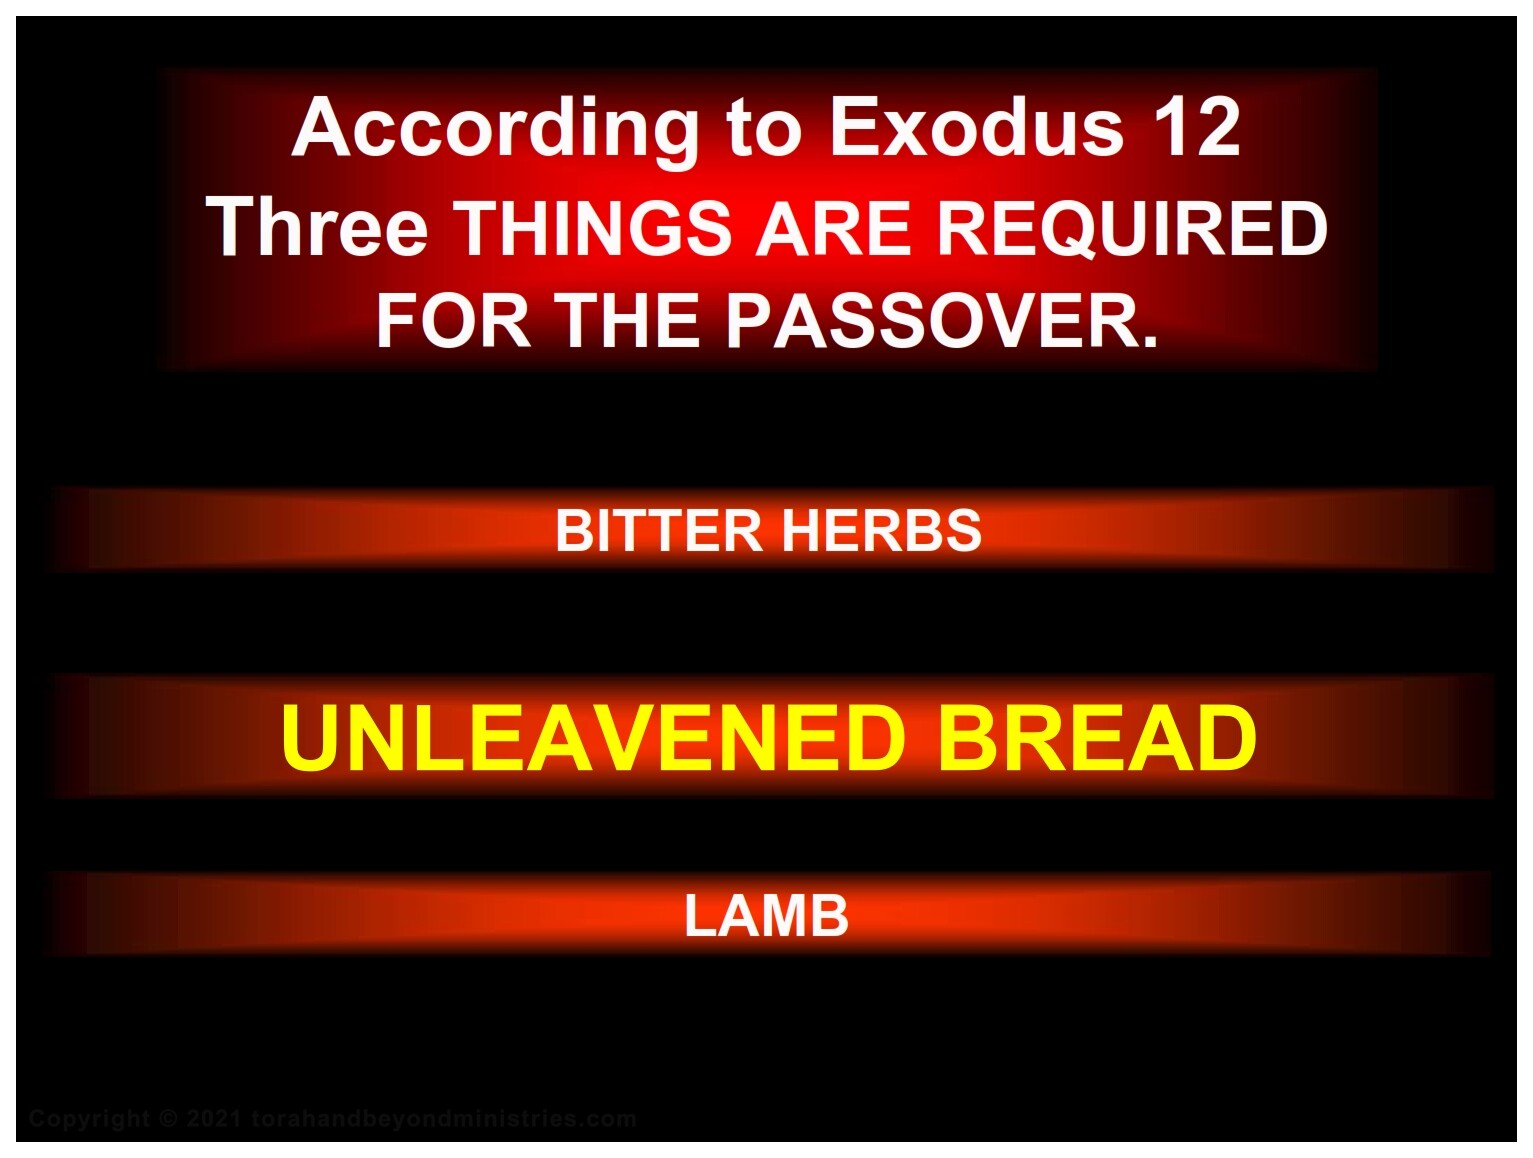 Exodus 12 requires unleavened bread (Matzo) for Passover